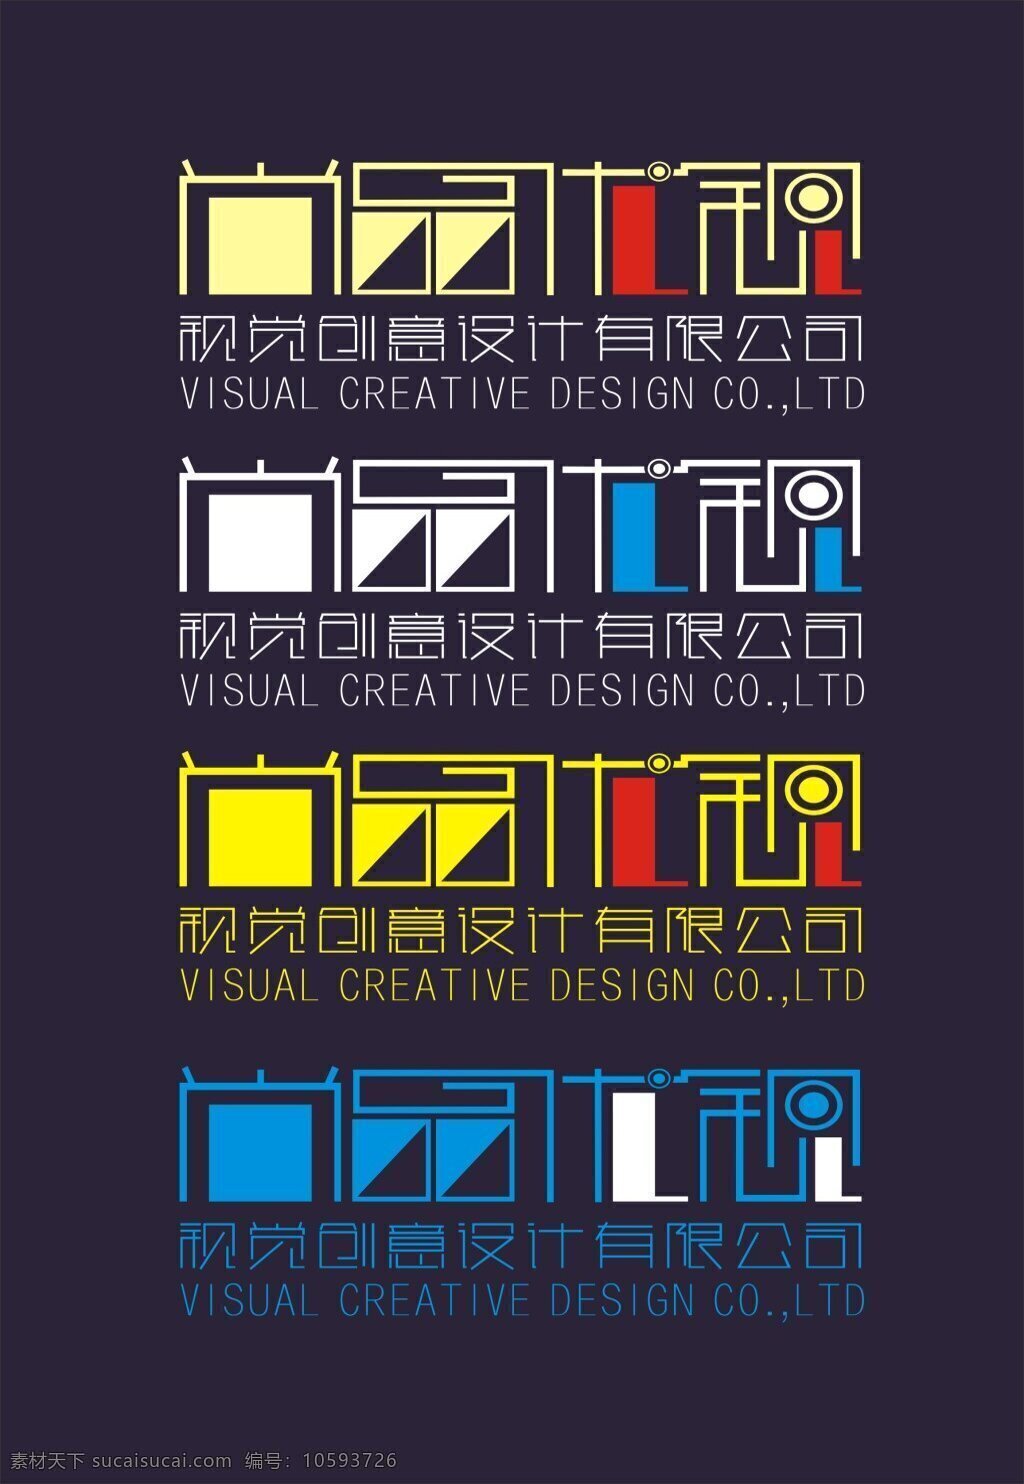 工作室 logo logo设计 企业形象 企业识别系统 字体设计 品尚优视 创意 创意工作室